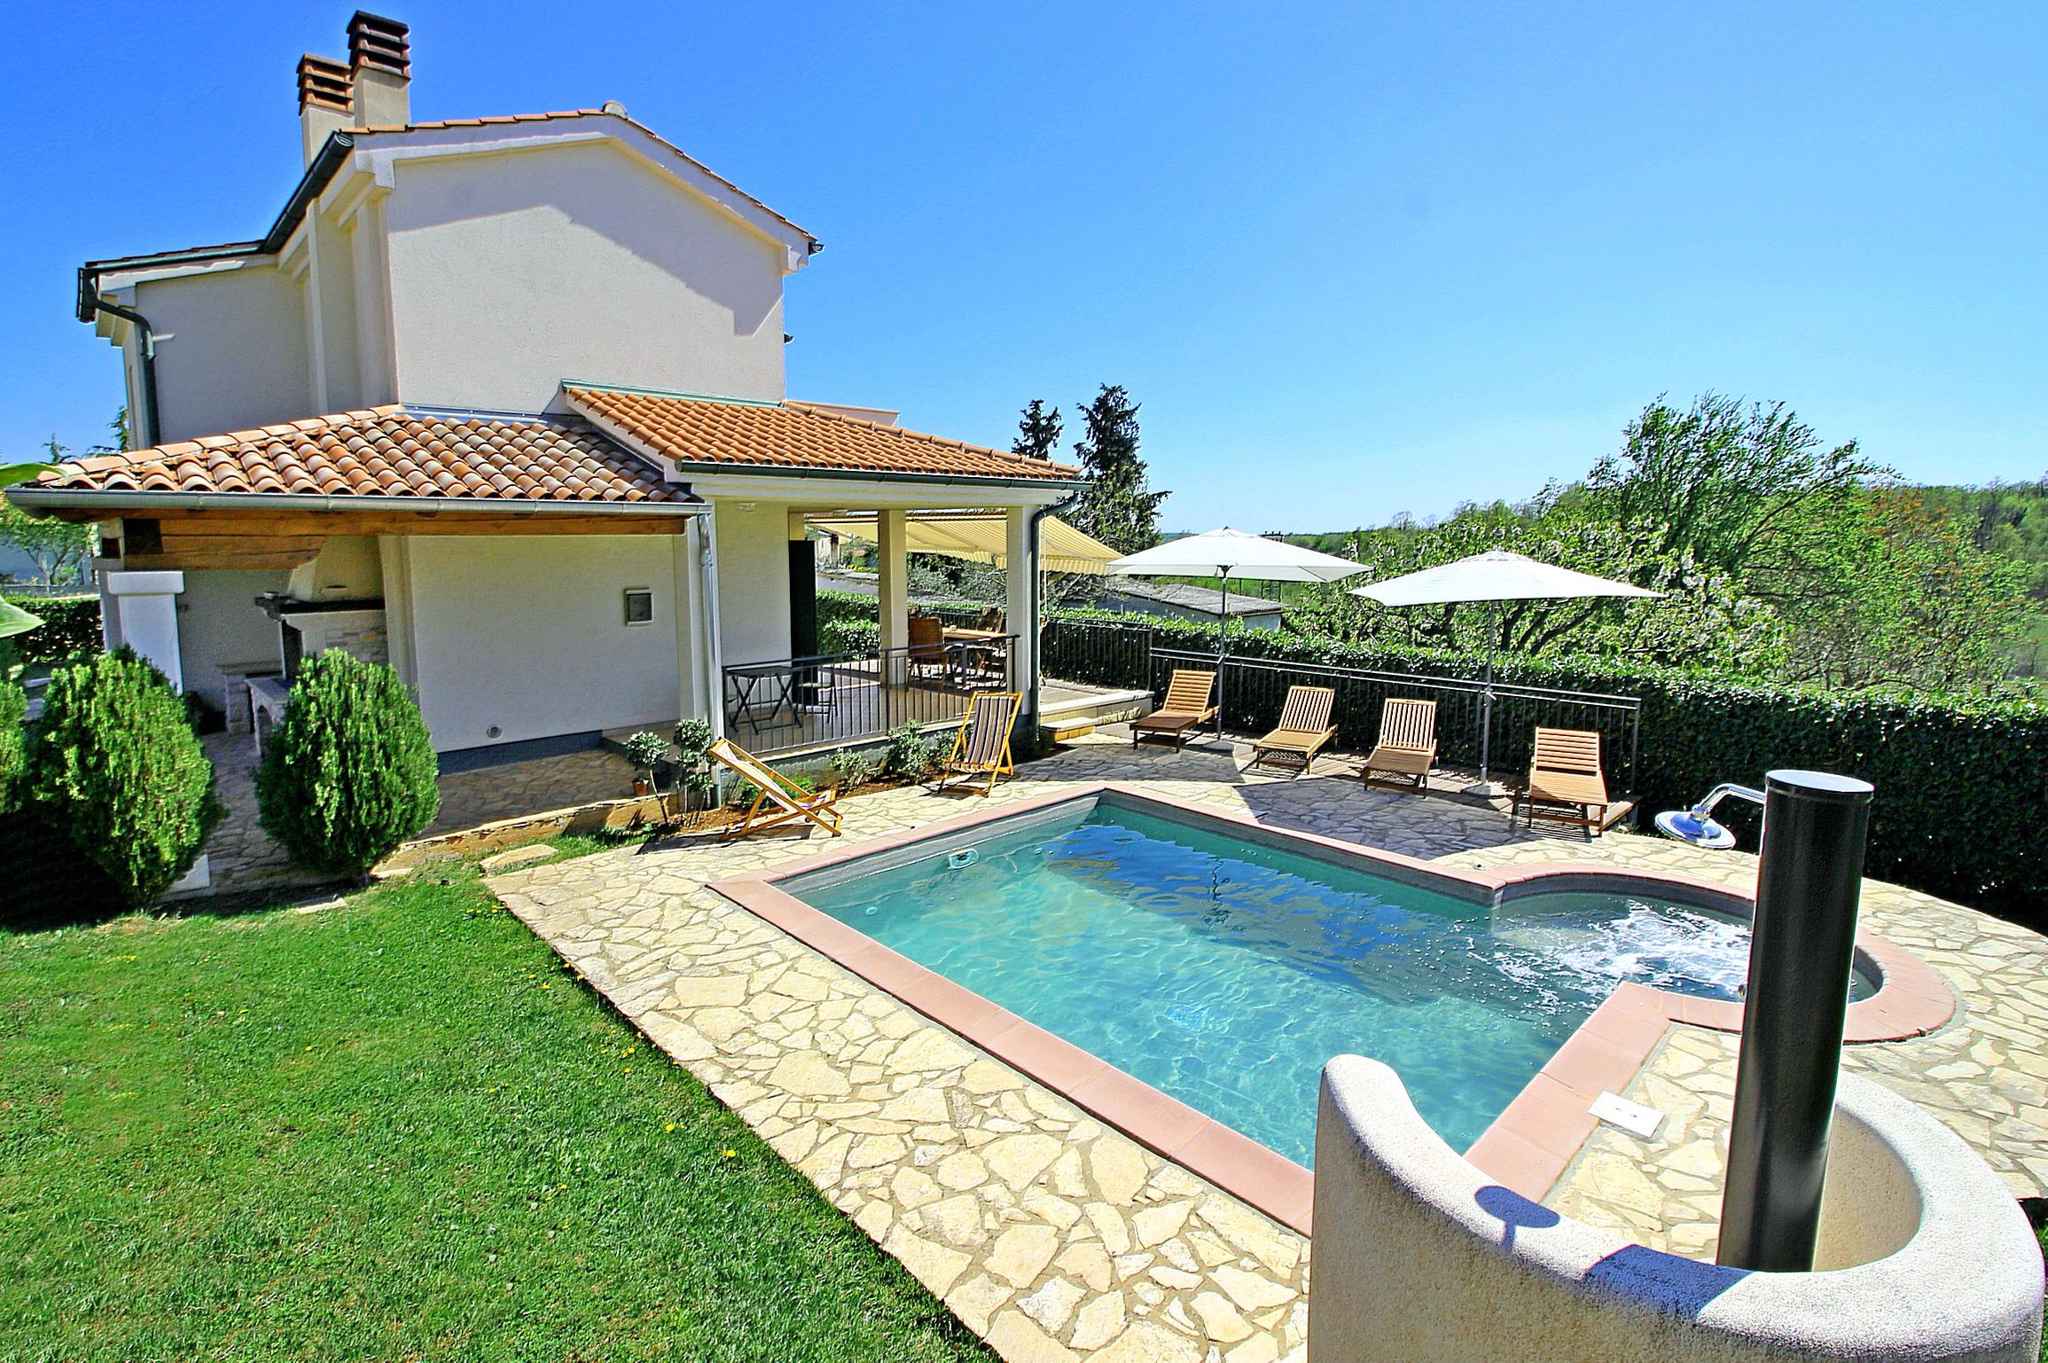 Villa mit Pool, Jacuzzi und Wellenanlage Ferienhaus in Istrien